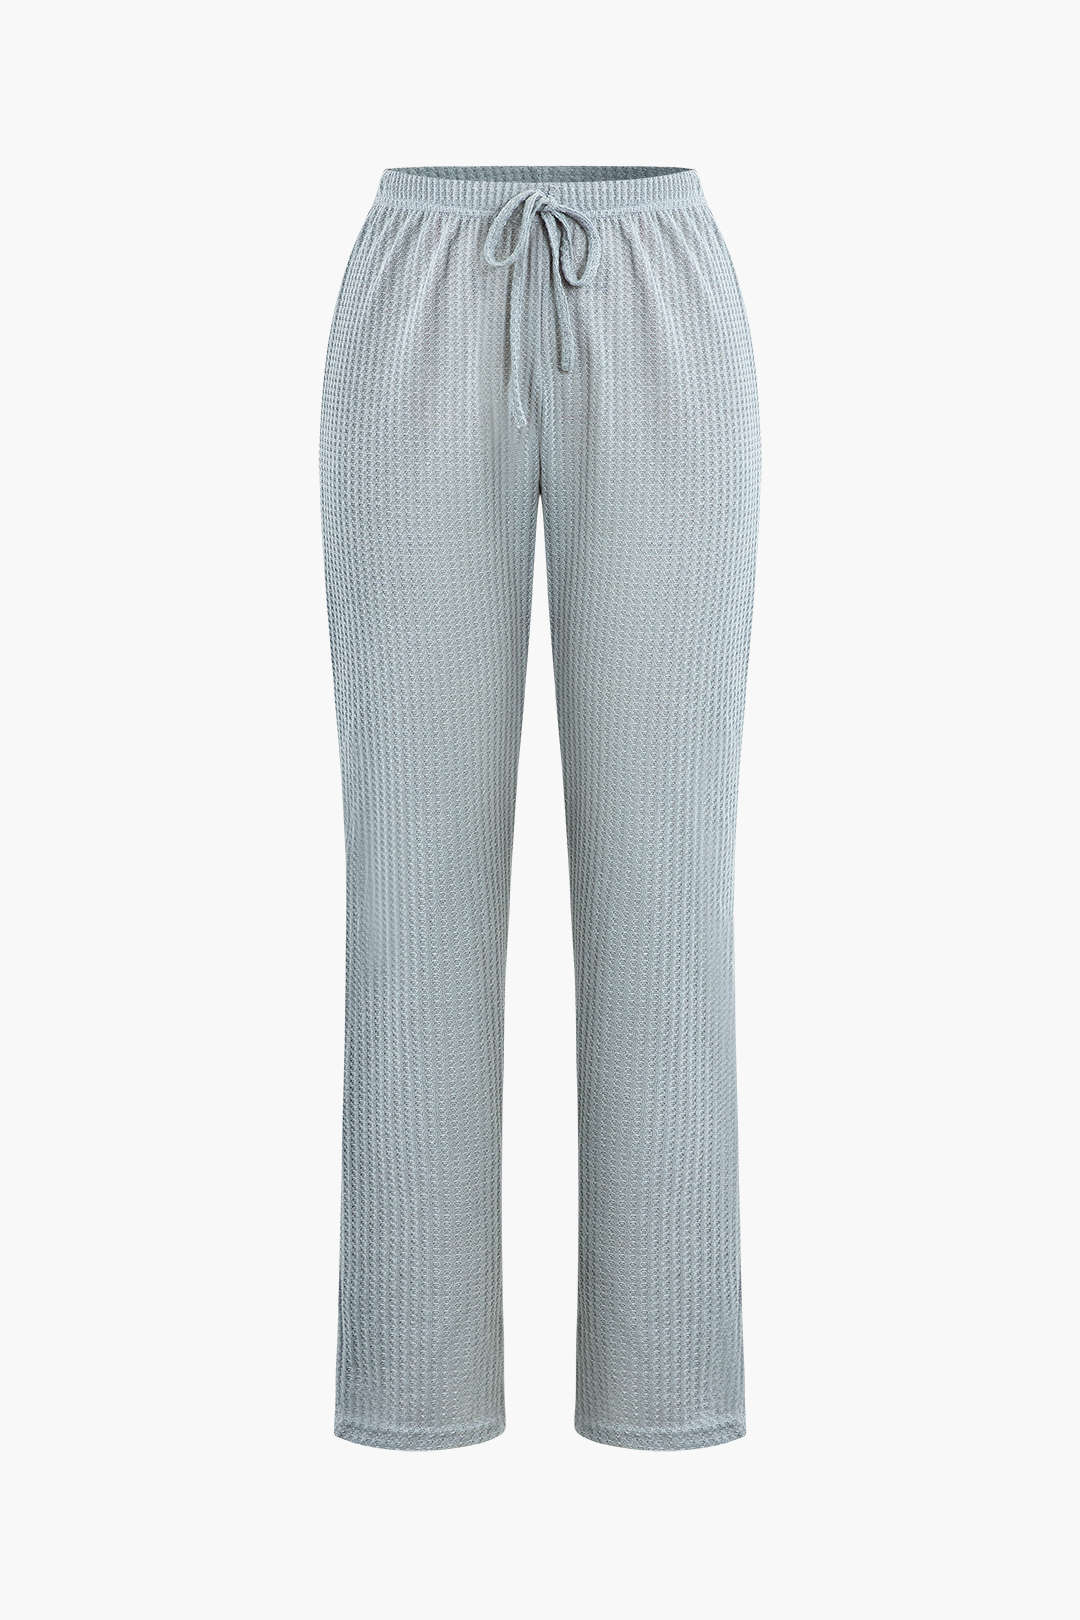 Waffle Cami Top And Drawstring Pants And Long Sleeve Cardigan 3 Pcs Set